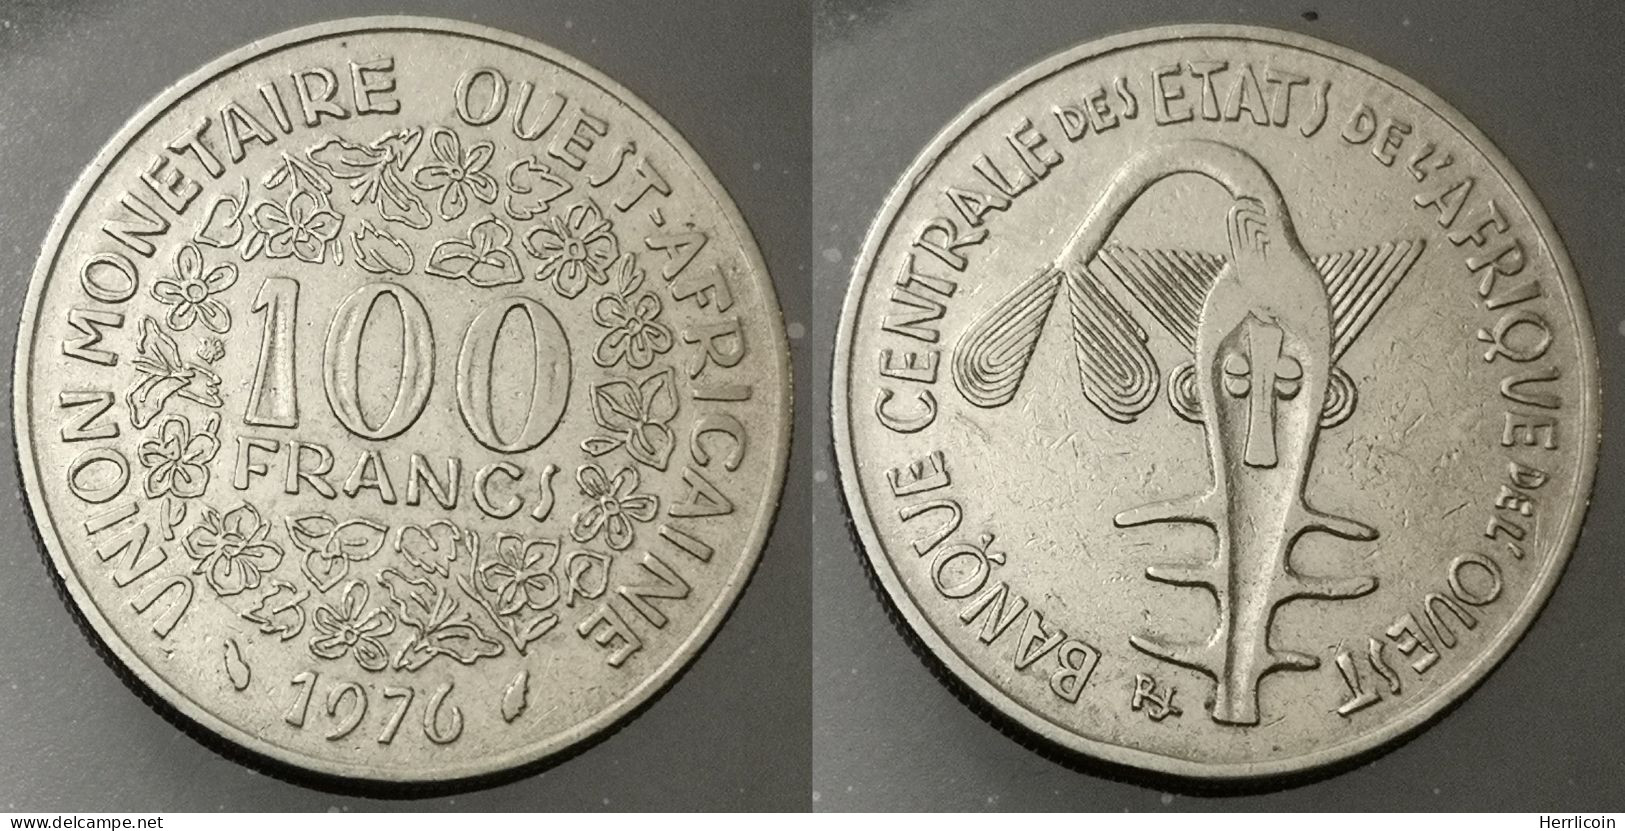 Monnaie Afrique De L'Ouest - 1976 - 100 Francs - Andere - Afrika